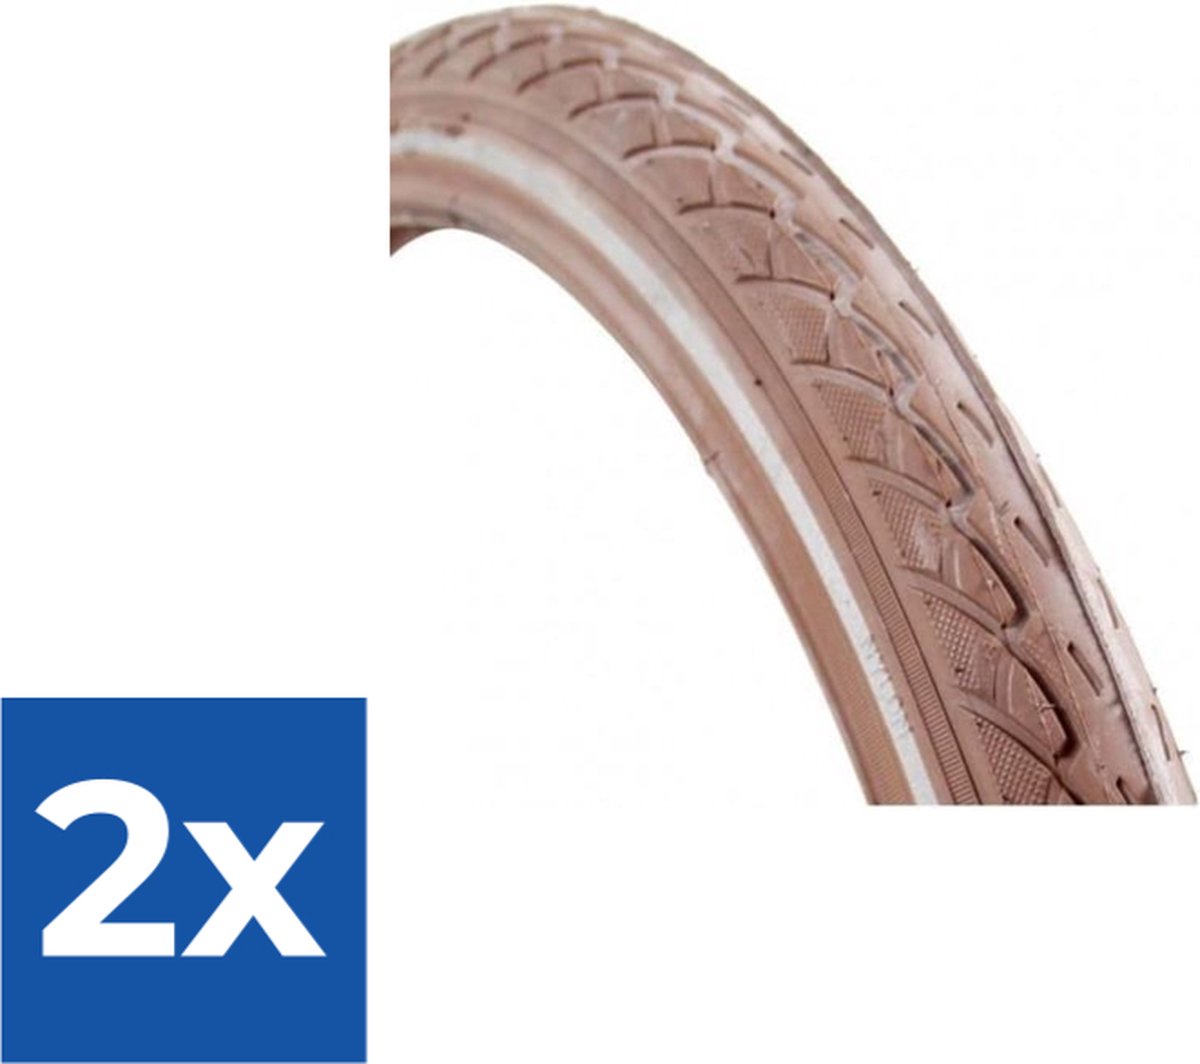 Deli Tire Buitenband SA-206 24 x 1.75 br refl - Voordeelverpakking 2 stuks